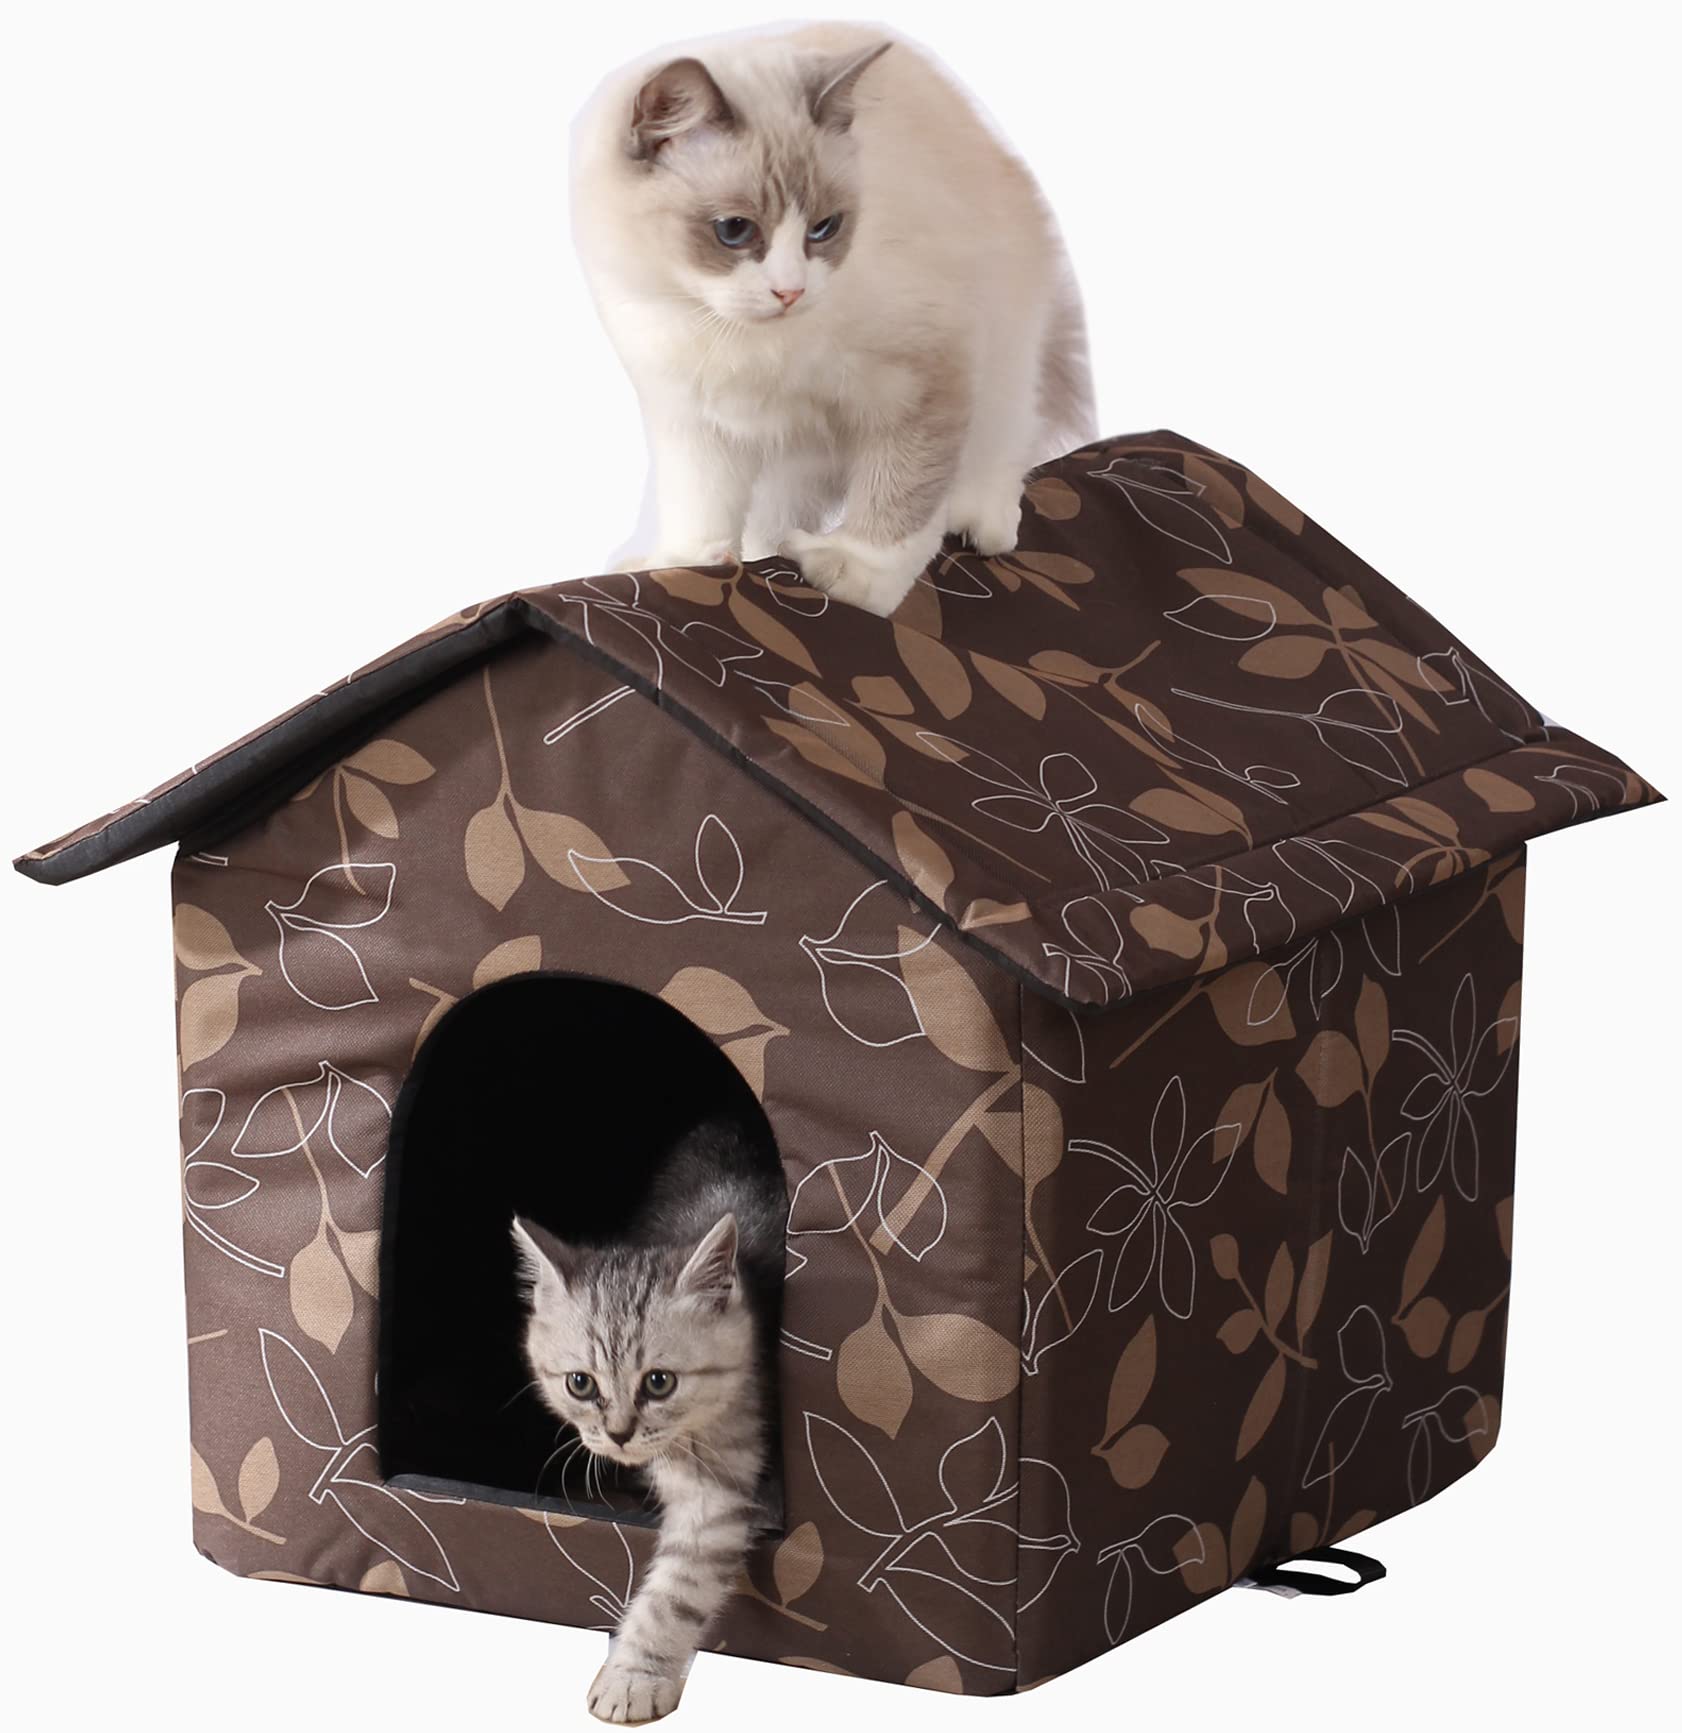 waterproof outdoor cat house